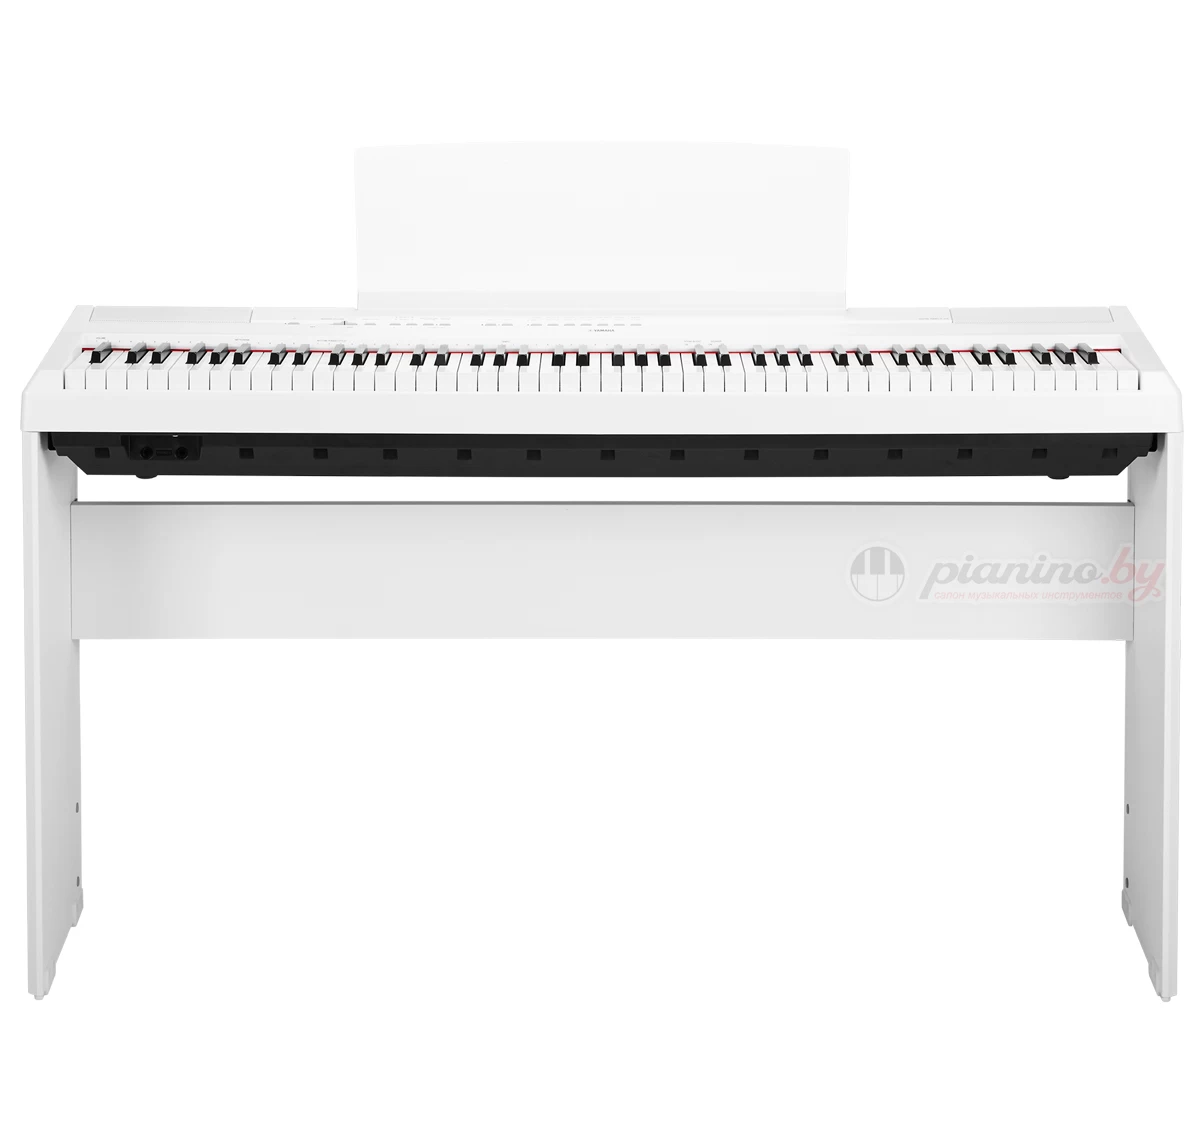 Цифровое пианино Yamaha P-115 WH купить в Минске, цена, отзывы